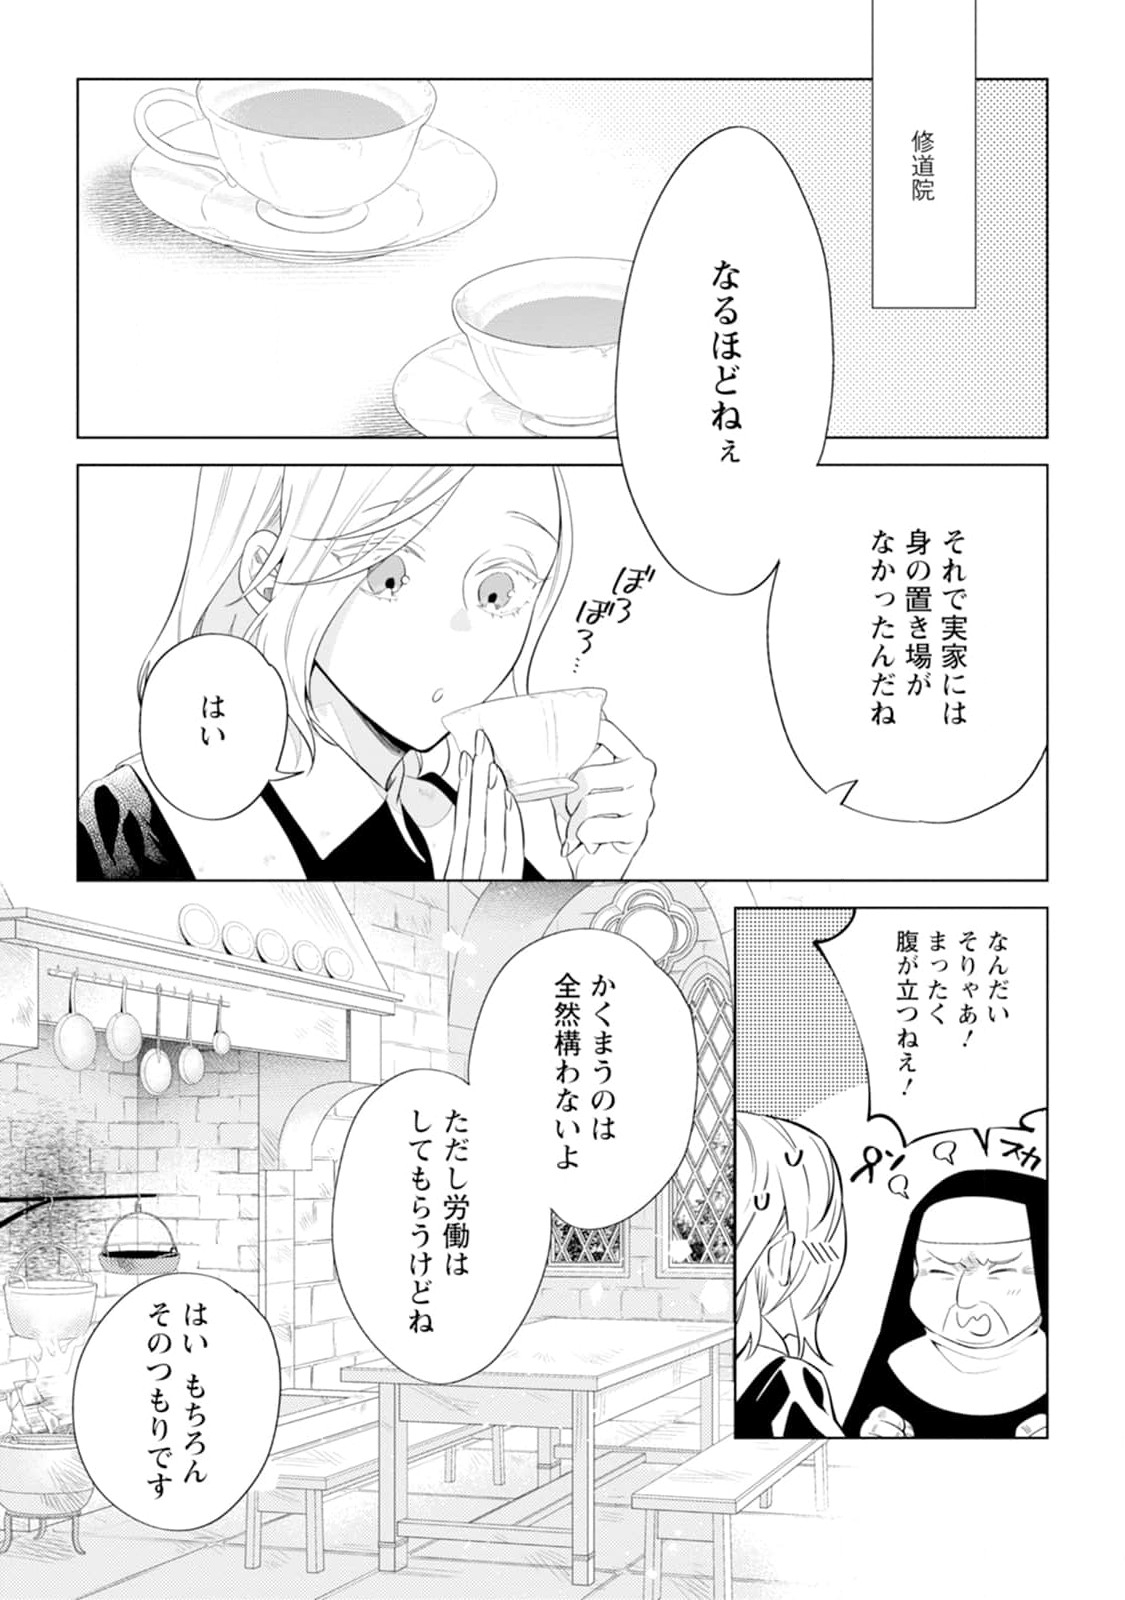 Dare ni mo Aisarenai no de Yuka wo Migaite Itara Soko ga Seiiki-ka shita Reijou no Hanashi - Chapter 2 - Page 1